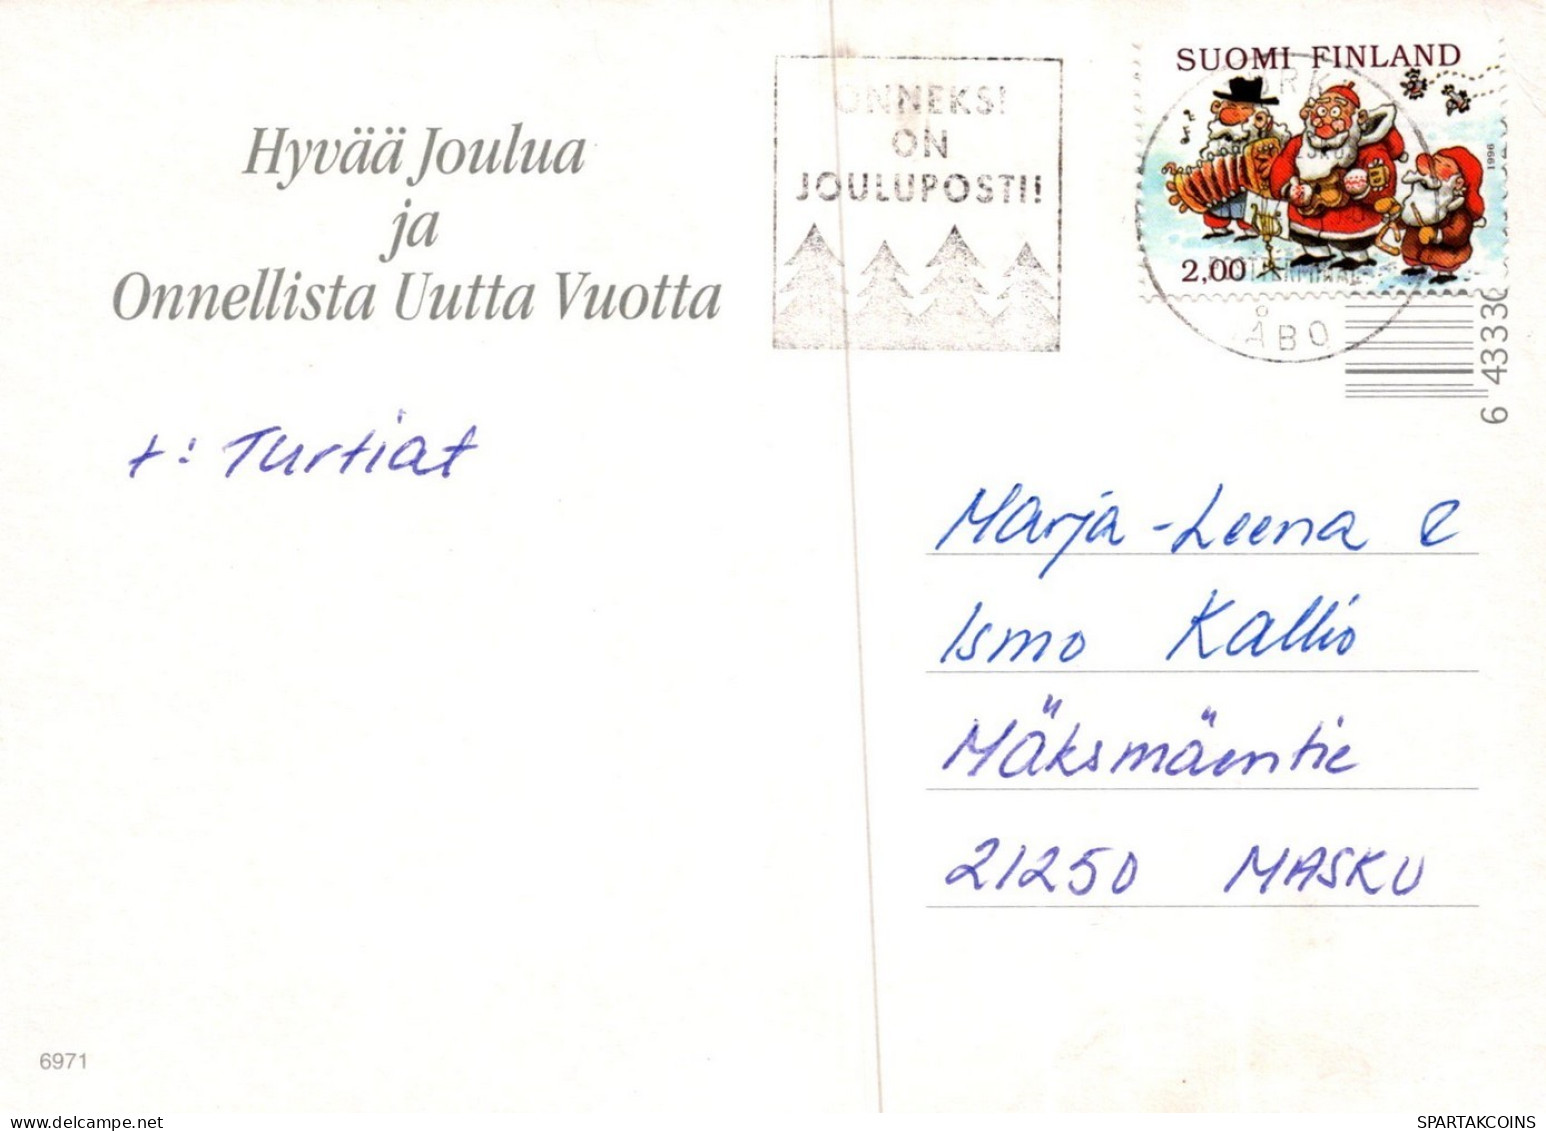 WEIHNACHTSMANN SANTA CLAUS TIERE WEIHNACHTSFERIEN Vintage Postkarte CPSM #PAK502.DE - Santa Claus